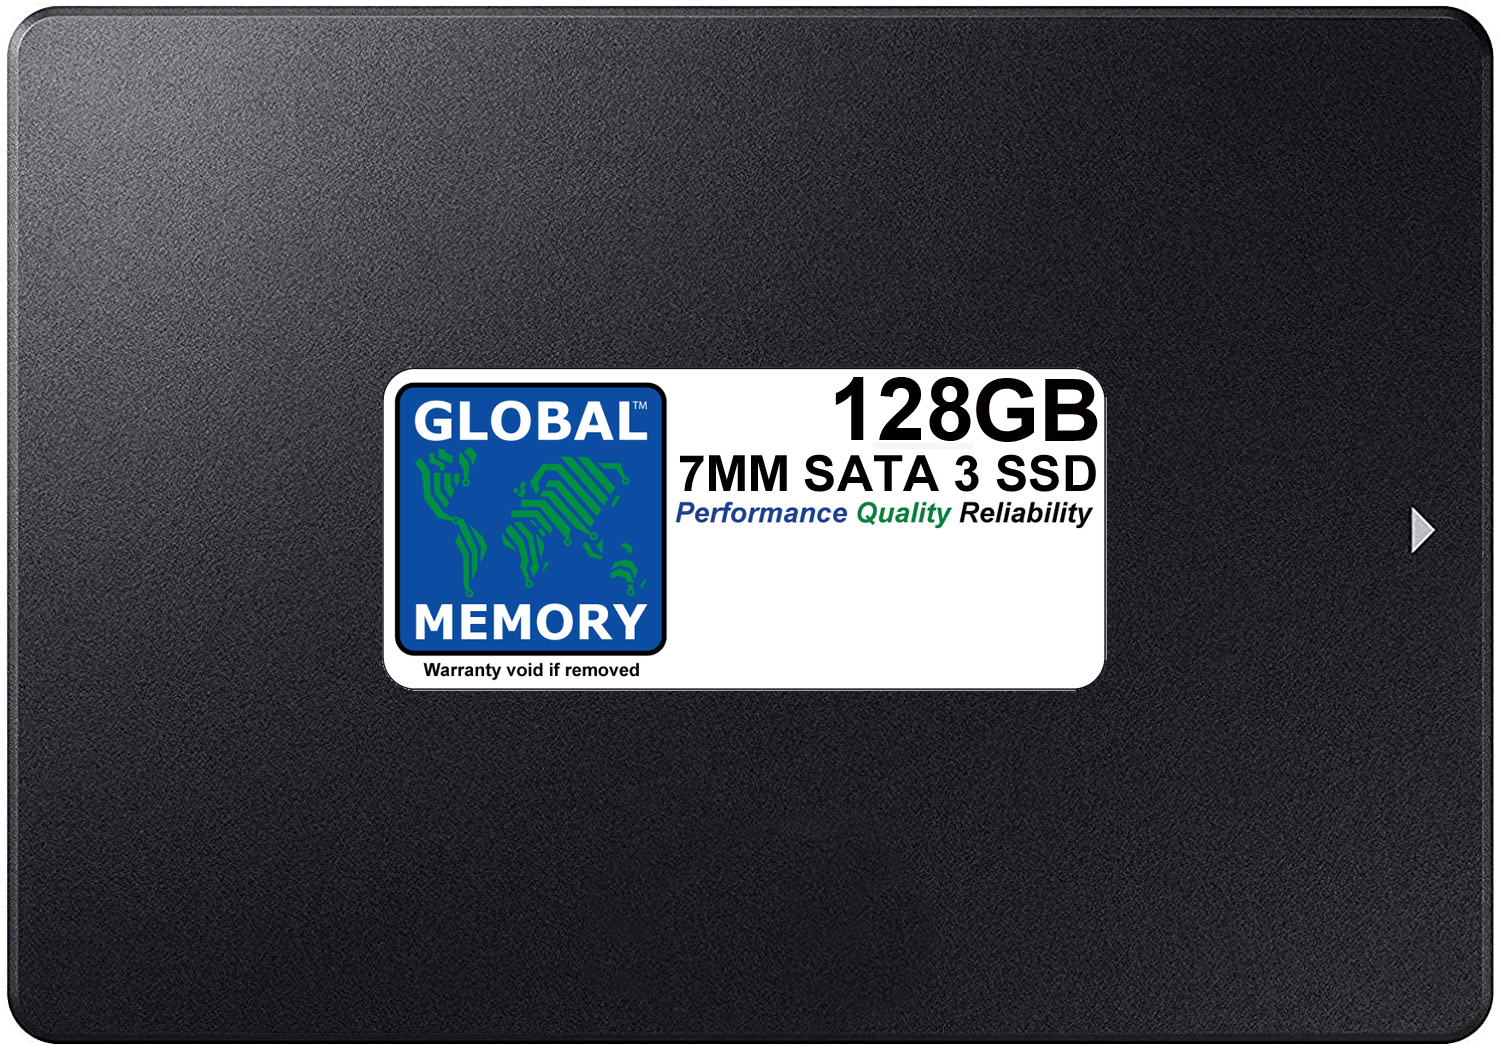 128GB 7mm 2.5" SATA 3 SSD FOR MACBOOK PRO NON RETINA (2011 - 2012)